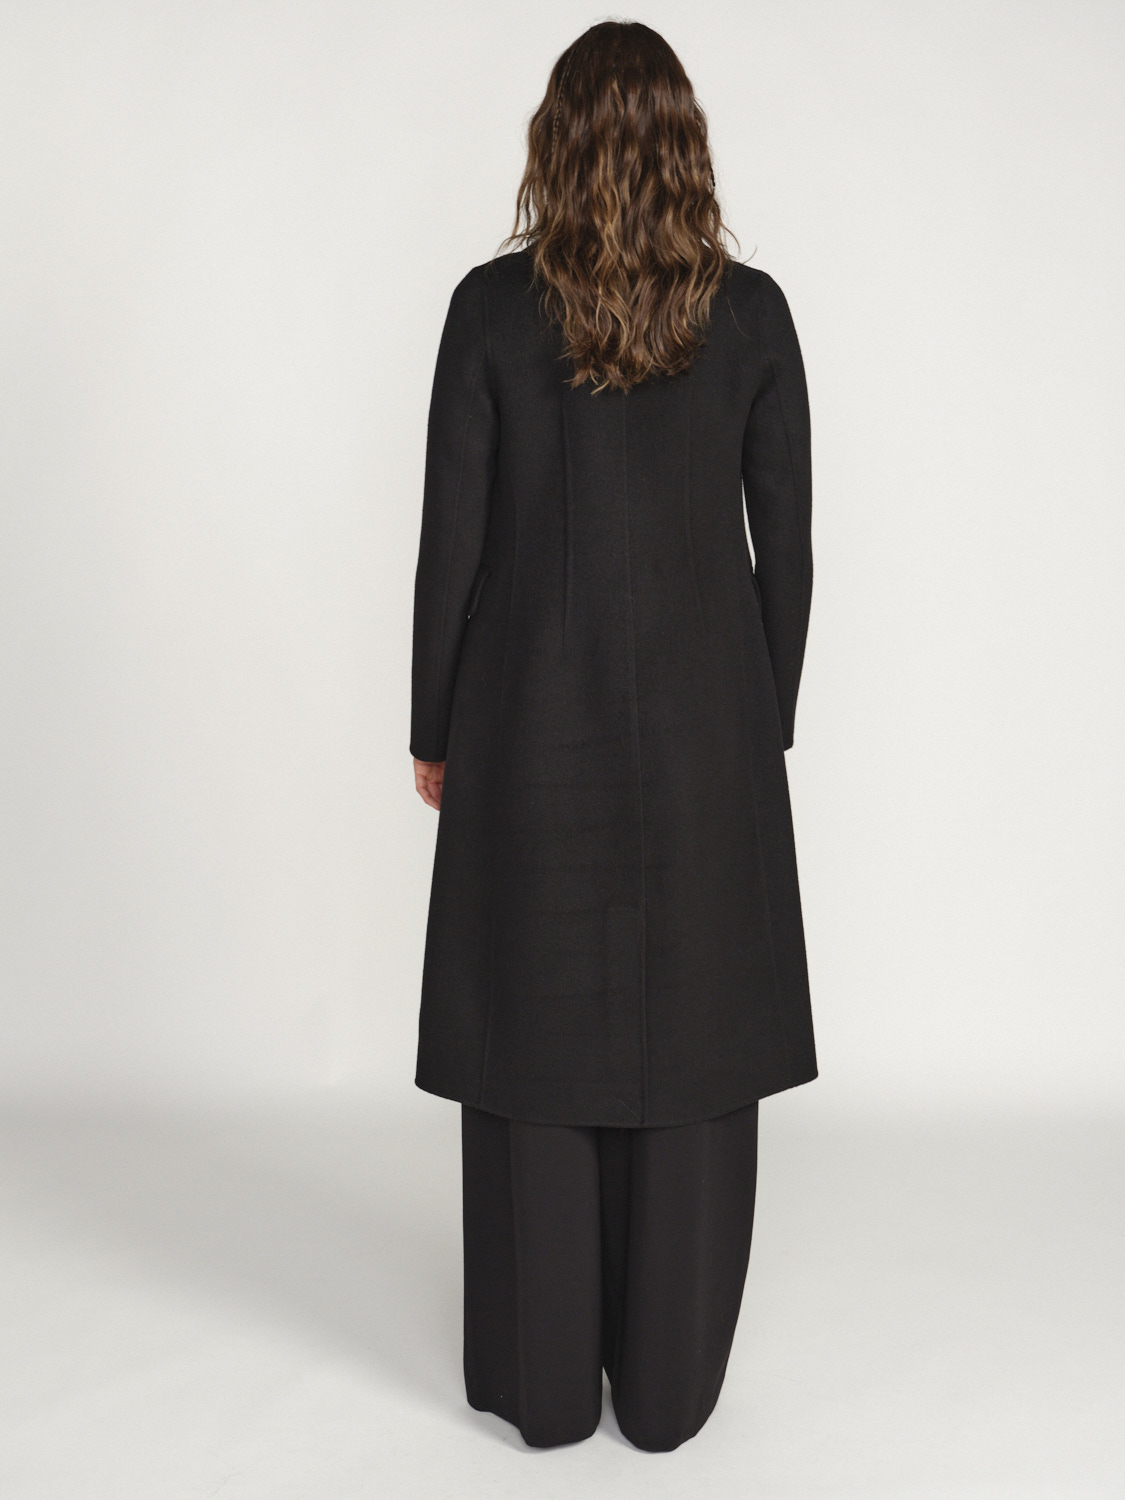 Arma Sao Paulo – Klassischer Mantel mit Knopfleiste aus Wolle schwarz 42